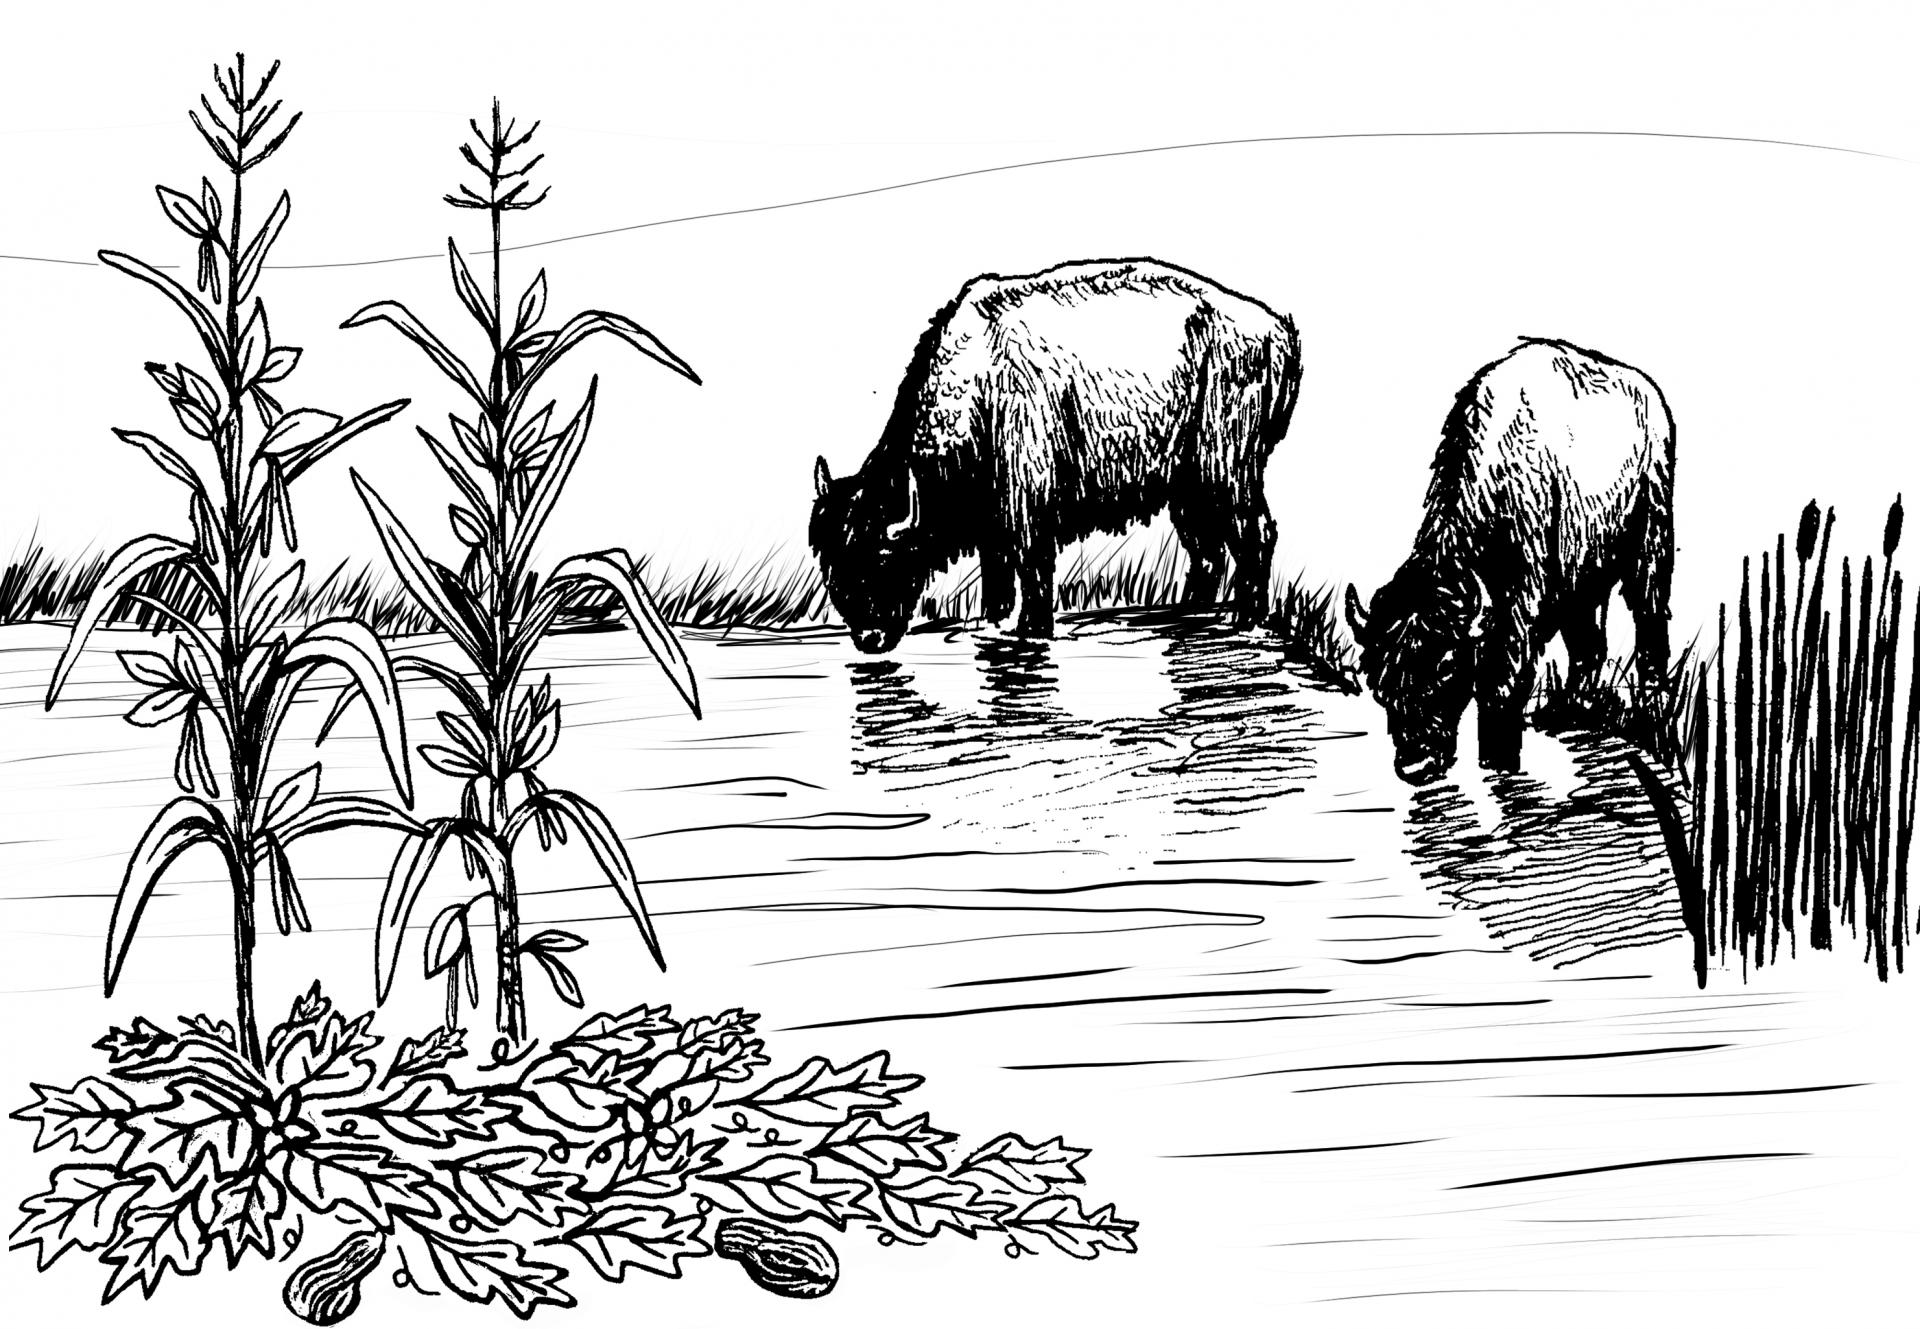 illustration of bison at a river